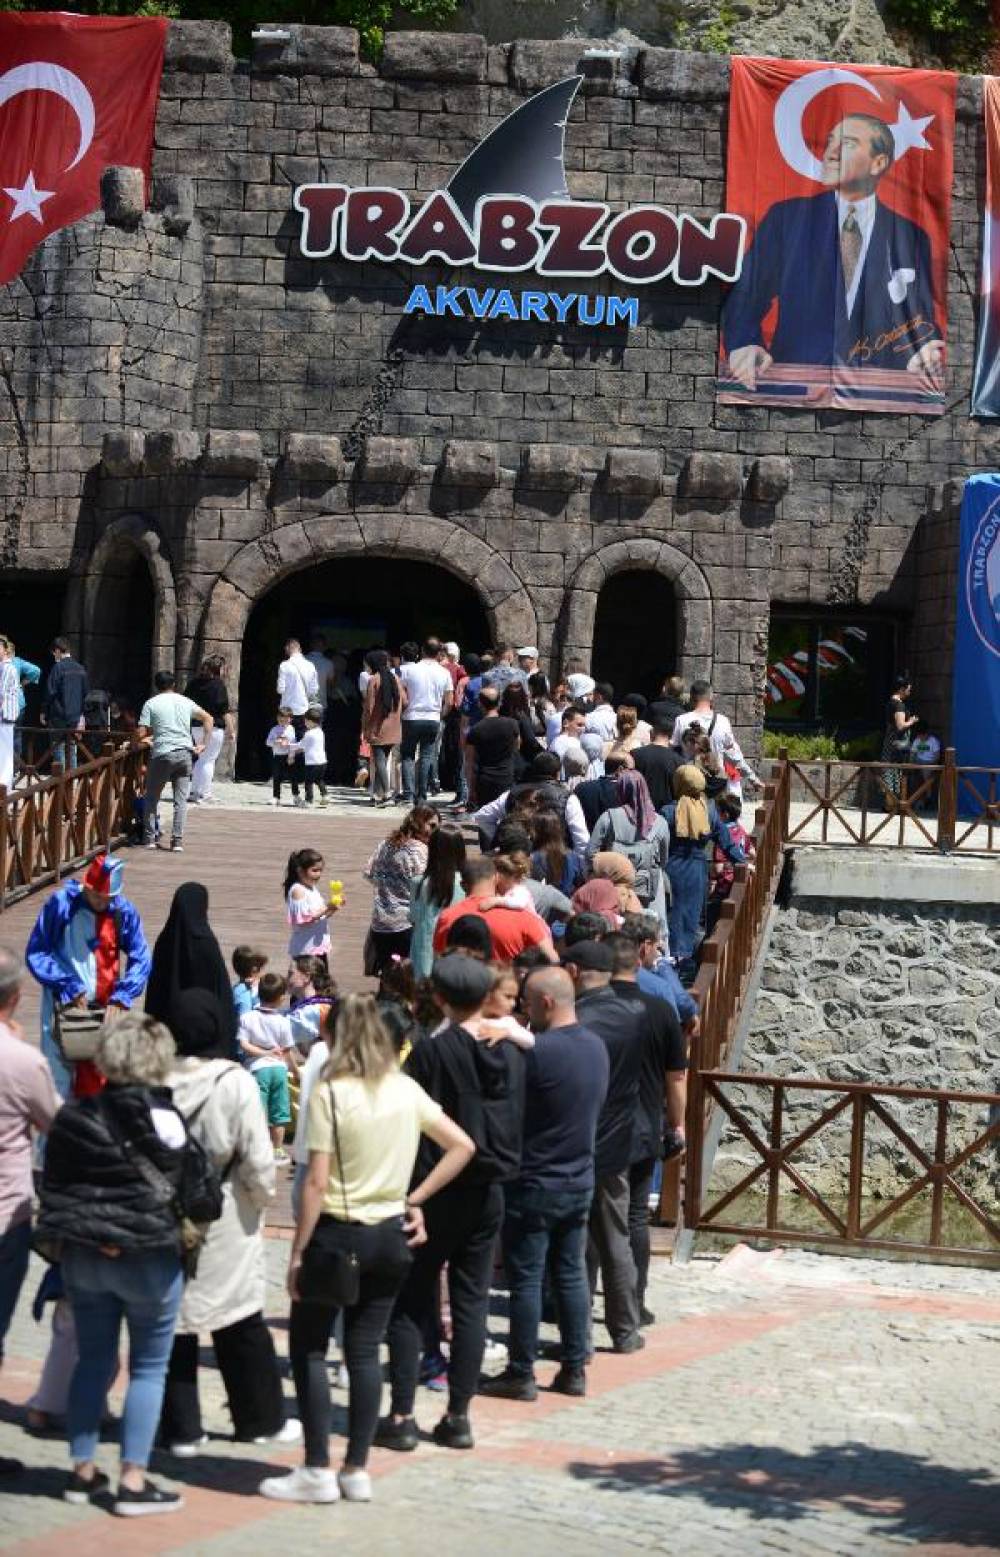 Tünel akvaryuma, 7 ayda 219 bini aşkın ziyaretçi